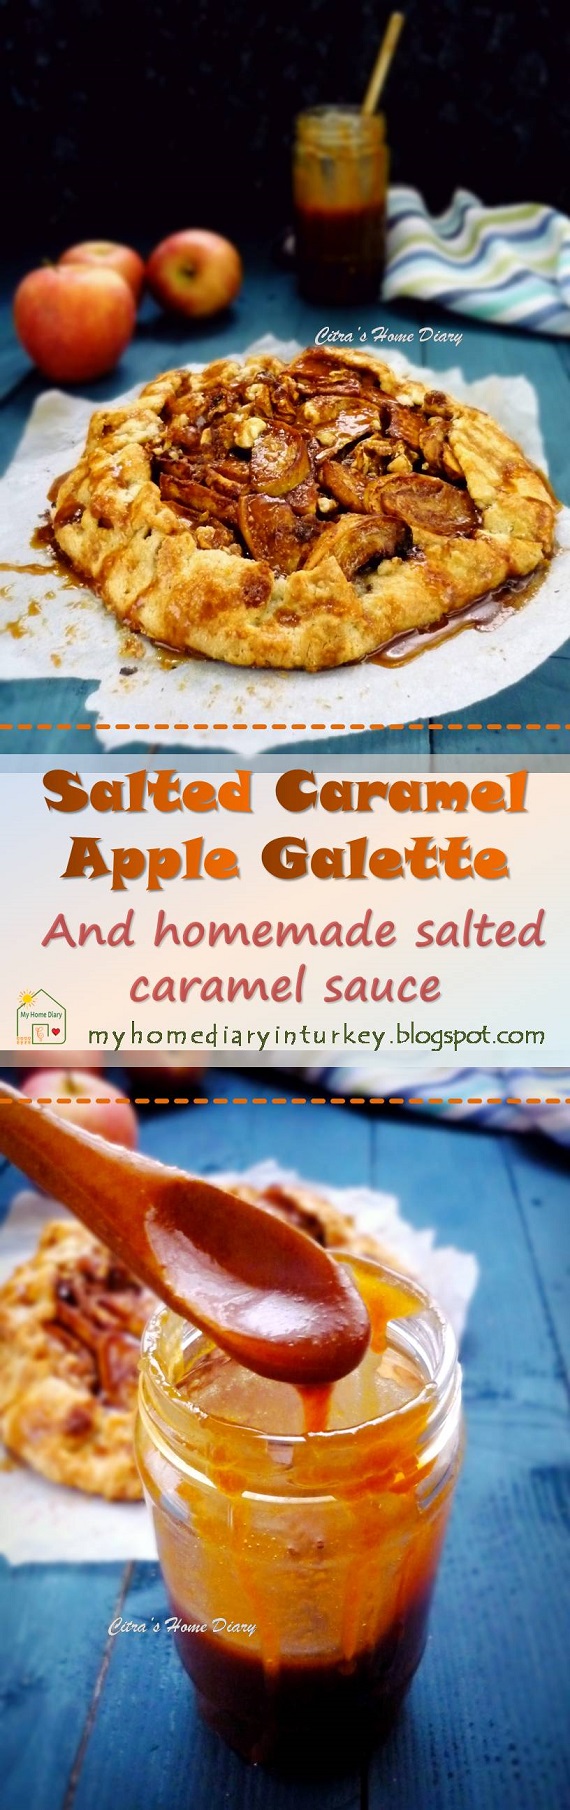 Salted caramel Apple Galette -Çitra's Home Diary.#applepie #galette #fallbaking #apple #dessert #caramelsauce